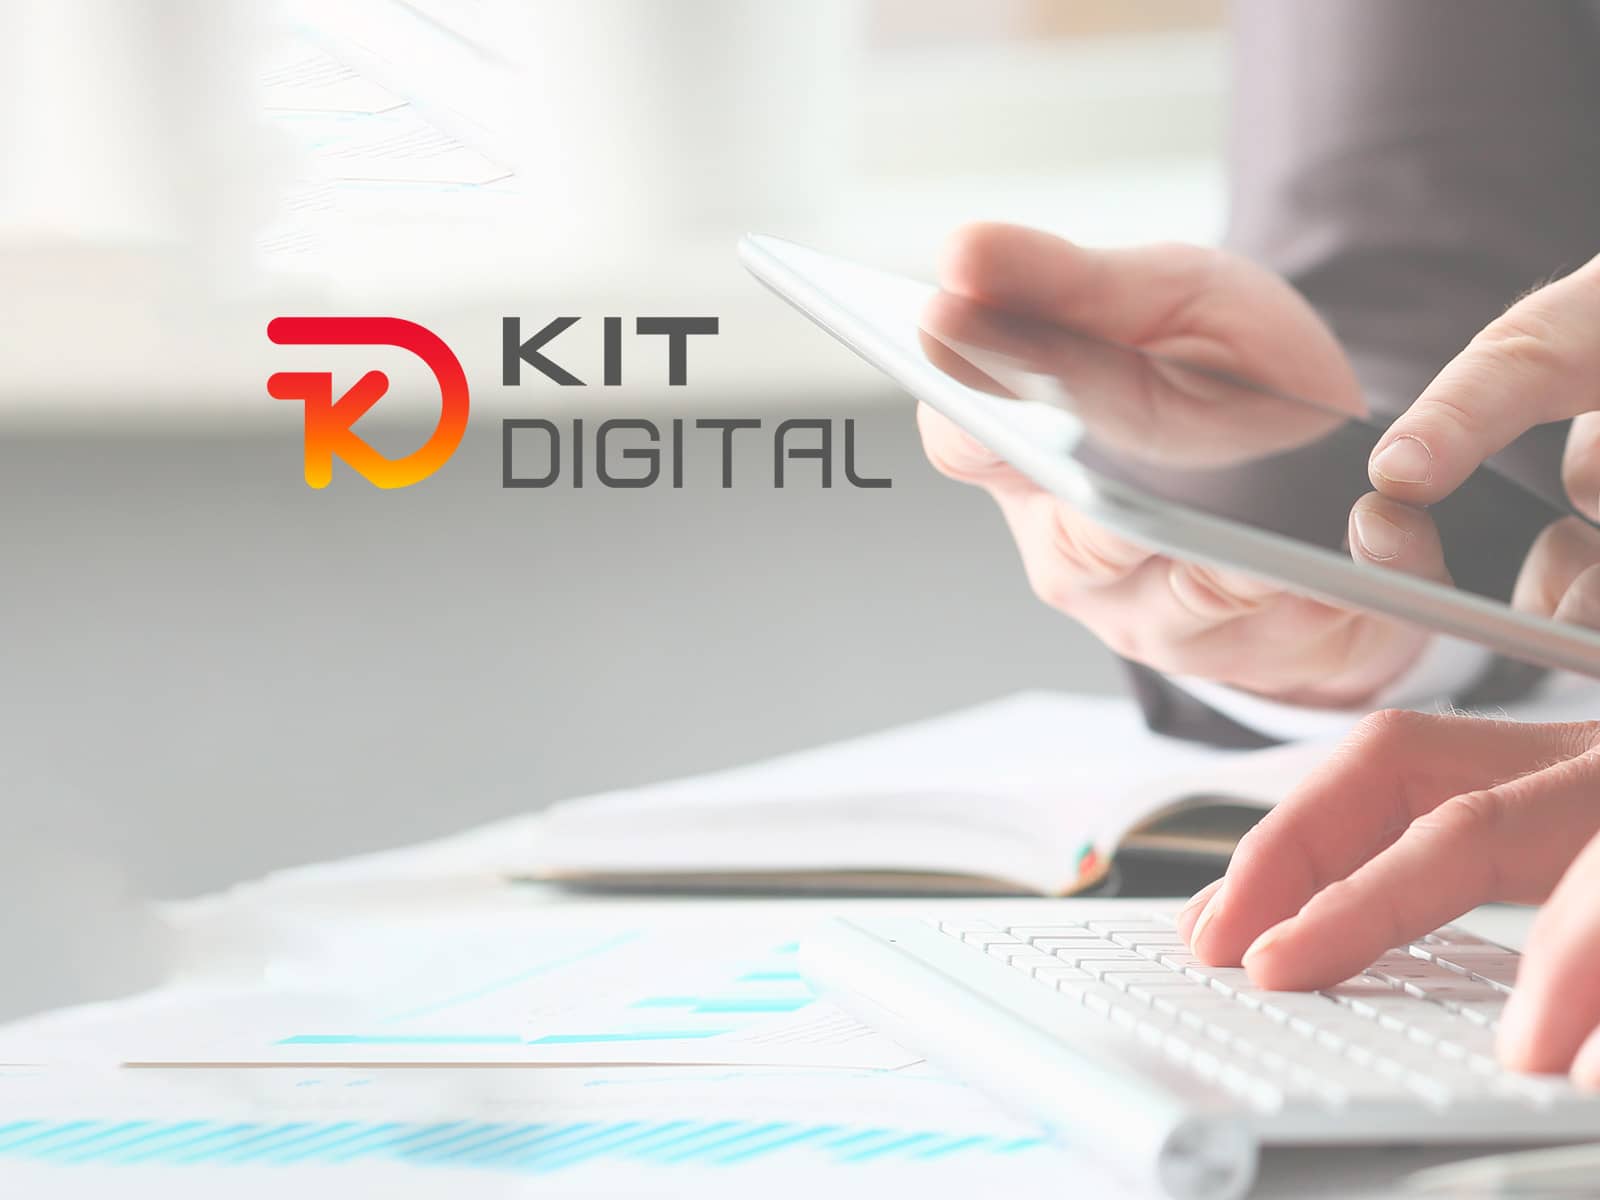 Sesión especial Programa Kit Digital con Red.es y KPMG